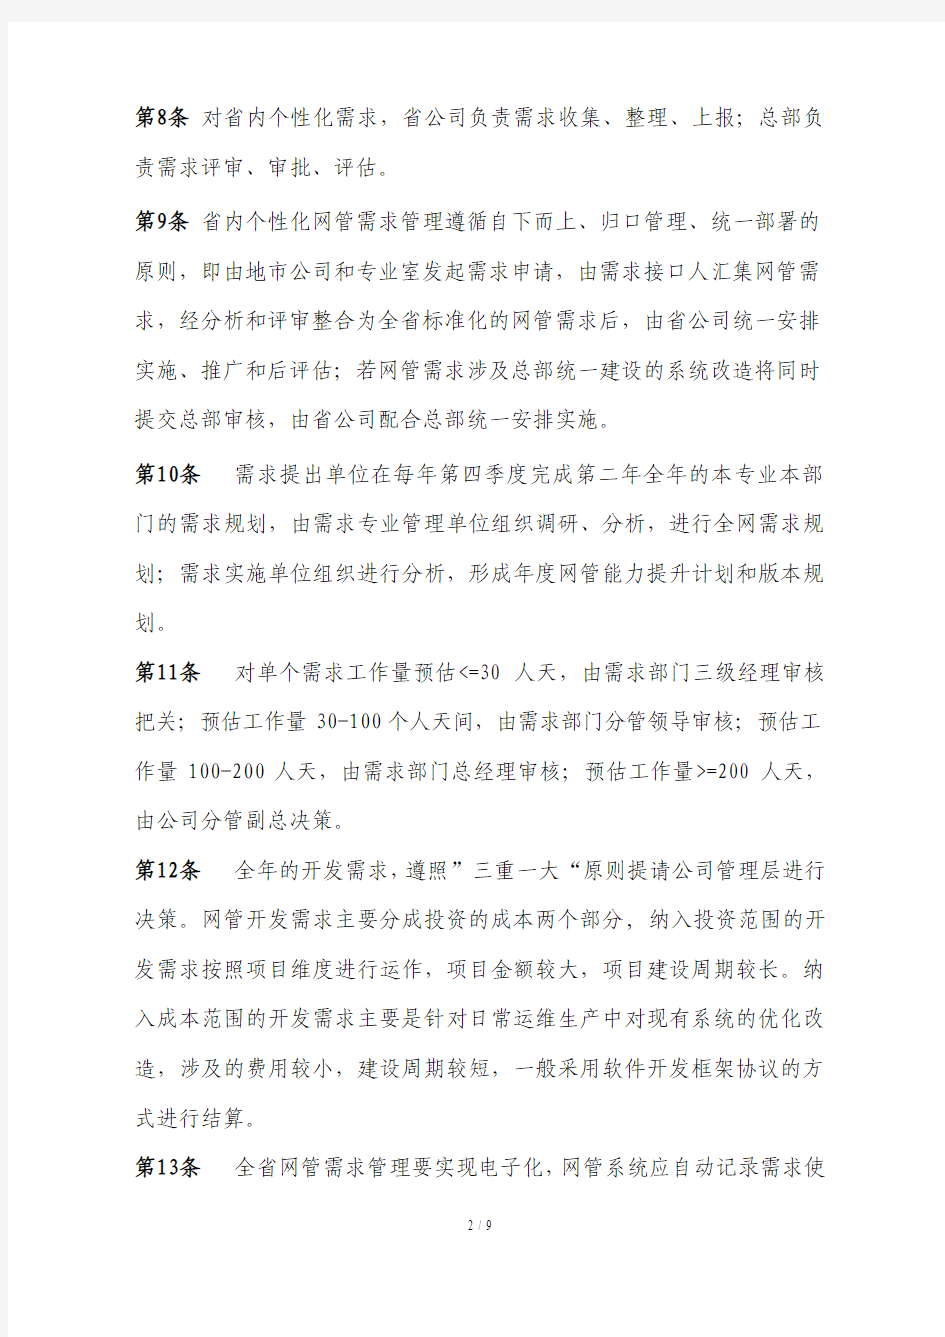 中国移动XXXXXX公司网管支撑系统需求管理办法(2015)